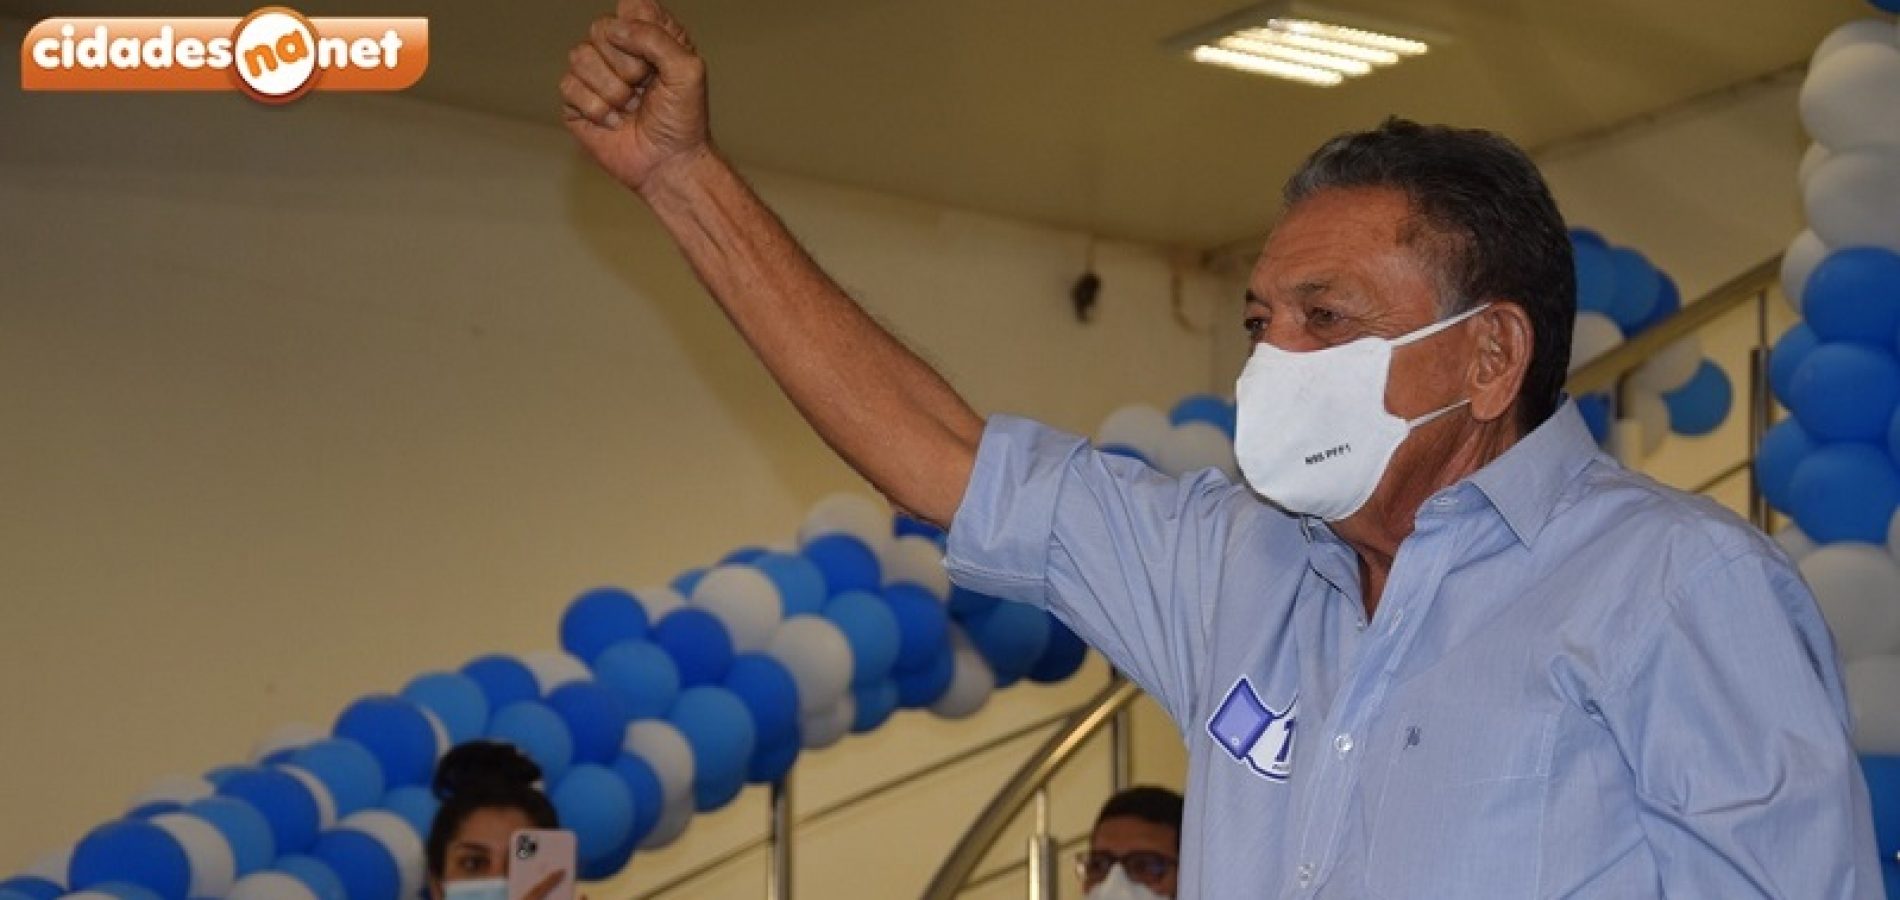 Em nova pesquisa, Gil Paraibano segue liderando a disputa para prefeito de Picos